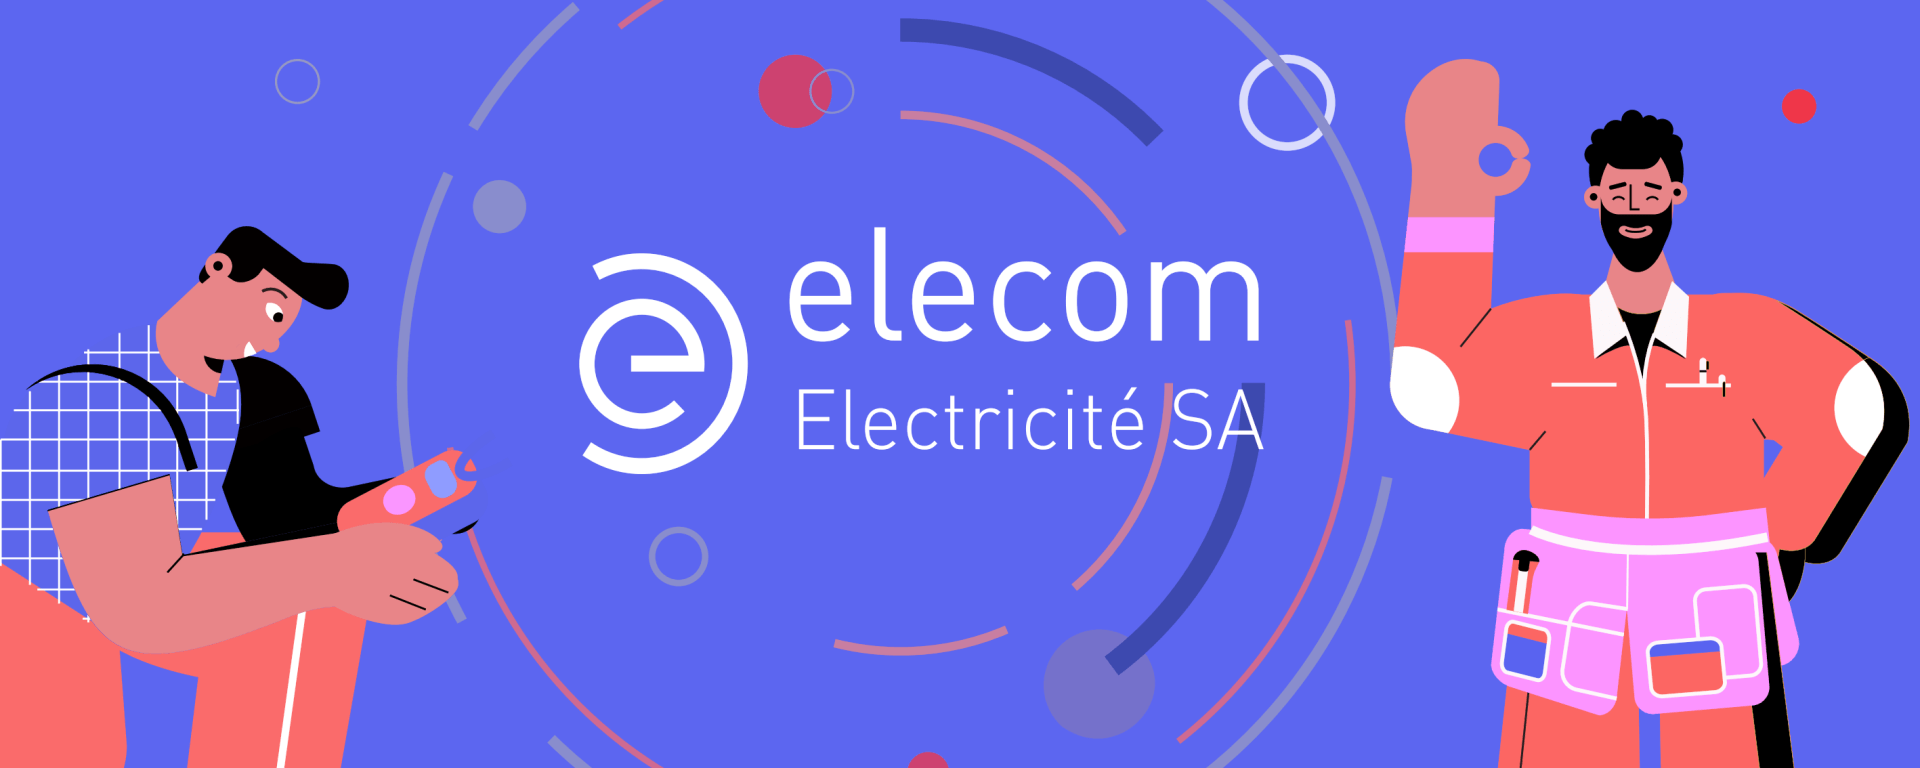 Bannière Elecom électricité SA